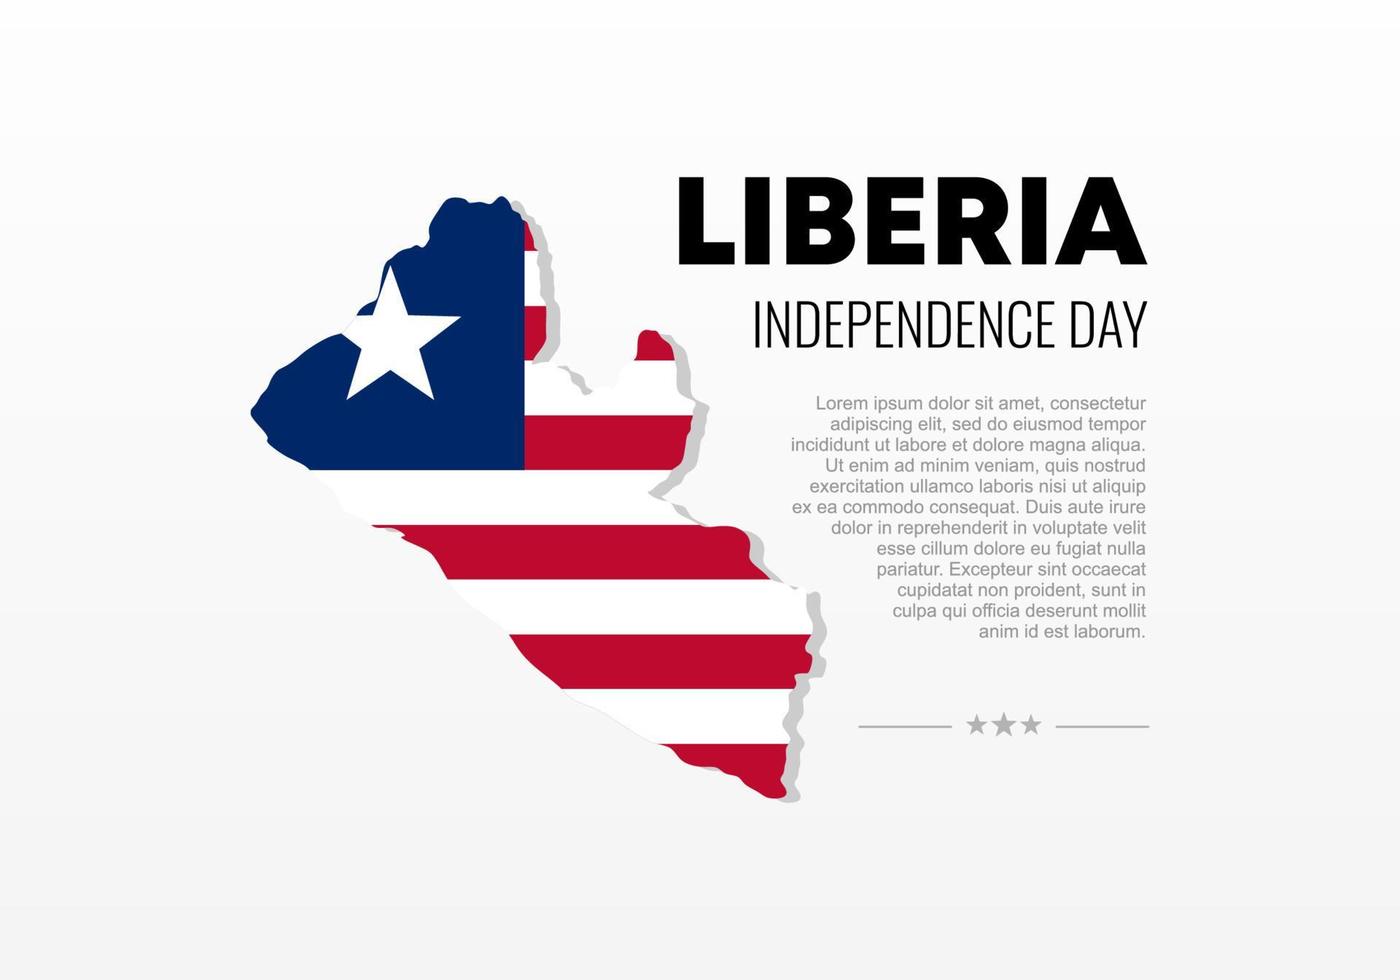 Liberia festa dell'indipendenza per la festa nazionale il 26 luglio. vettore